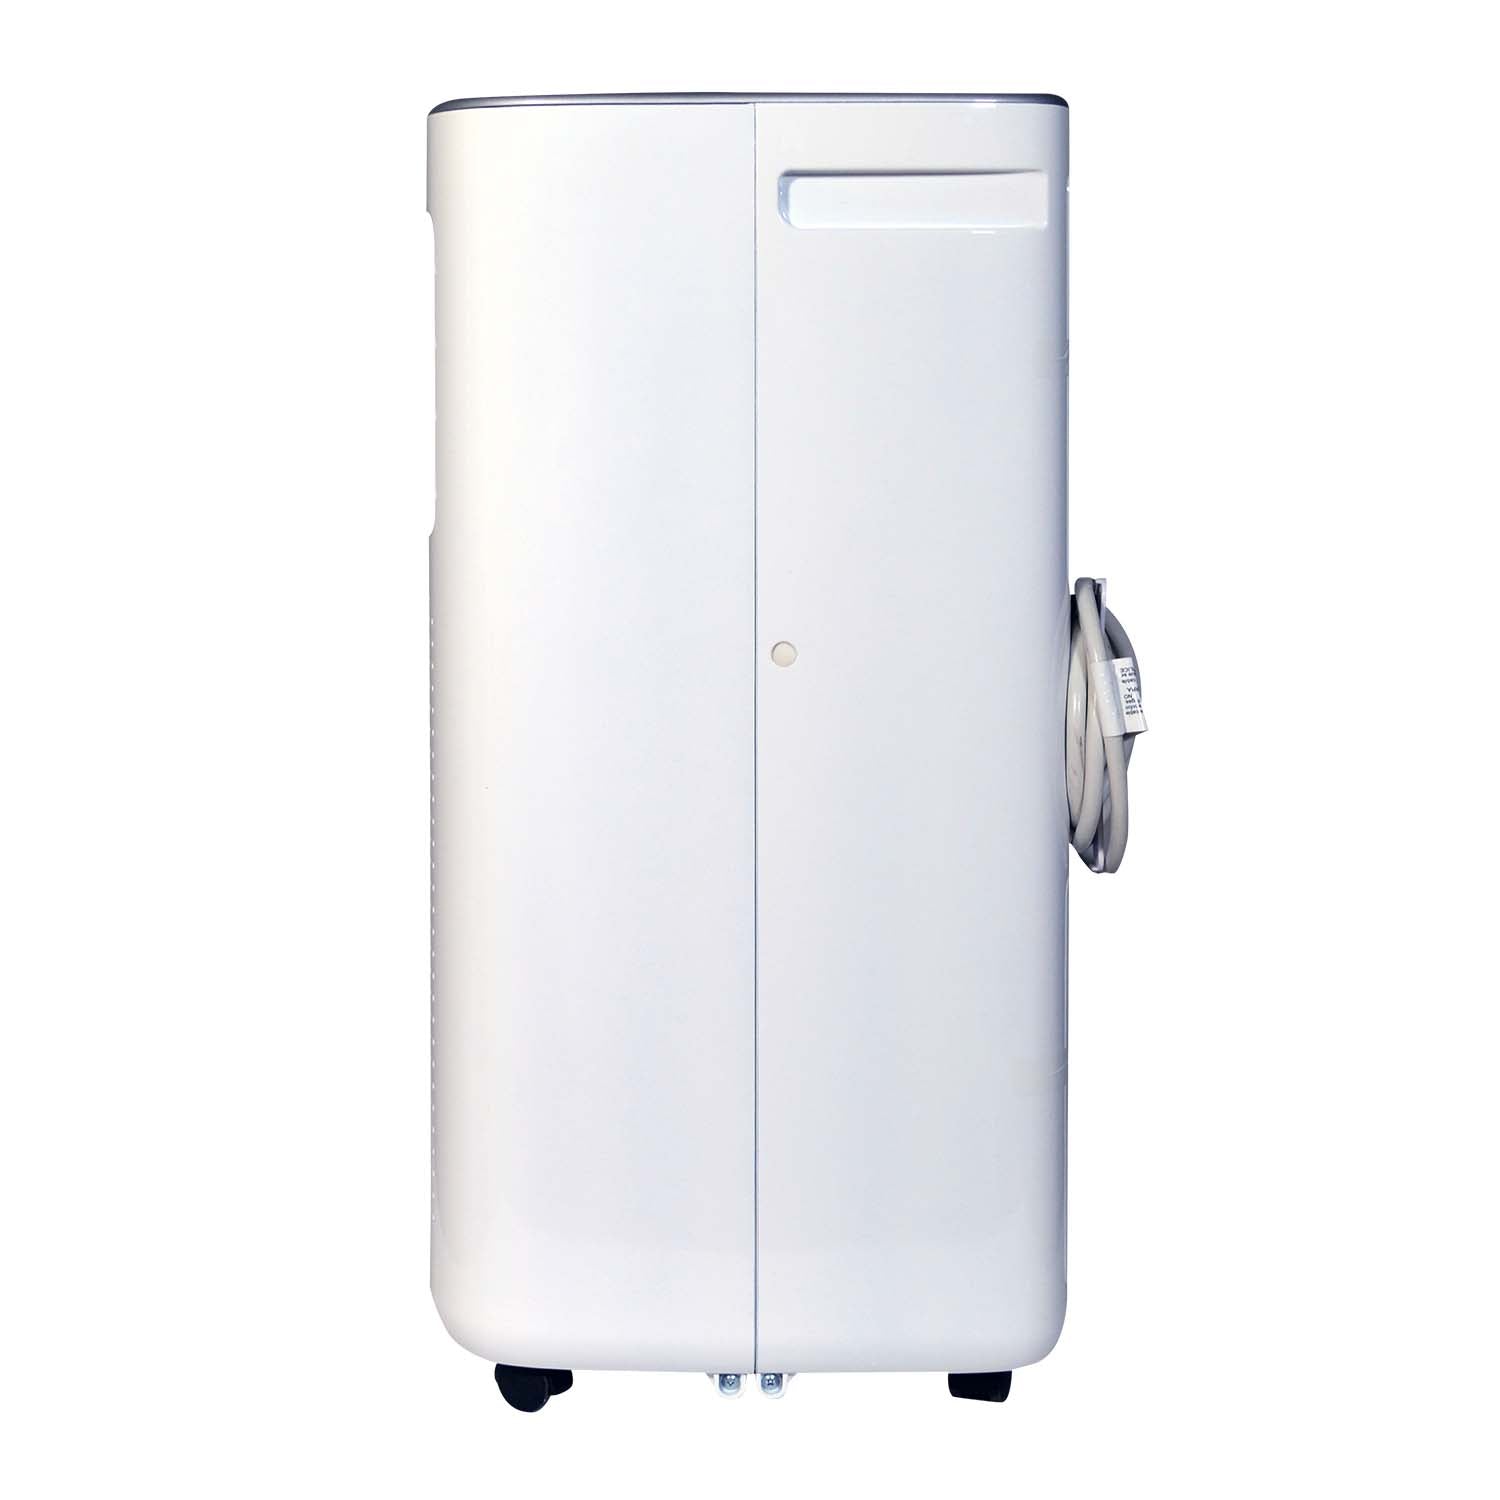 Soleus Air 10,000 BTU/6,000 BTU DOE Portable Air Conditioner